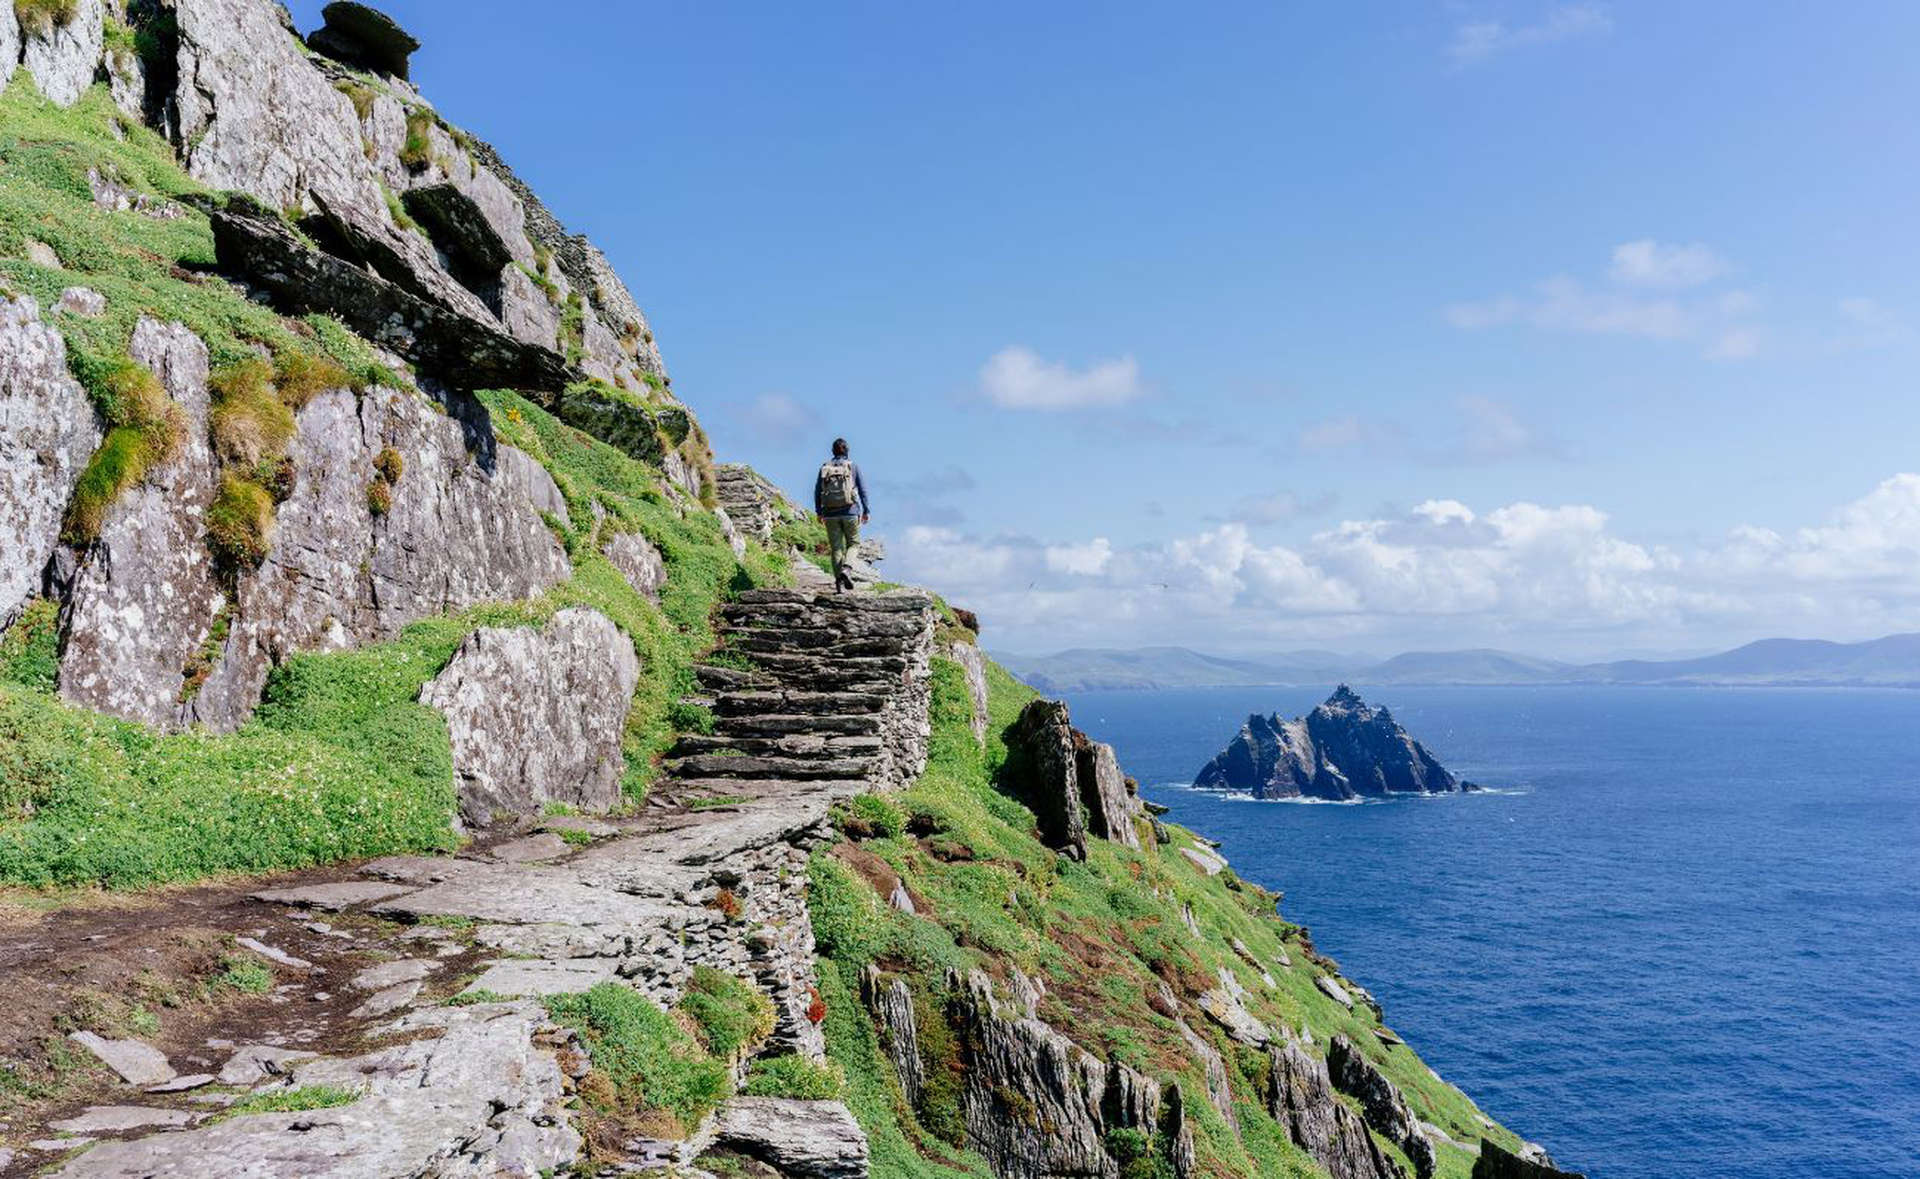 Skellig Michael, obiekt UNESCO na szmaragdowym wybrzeżu Irlandii